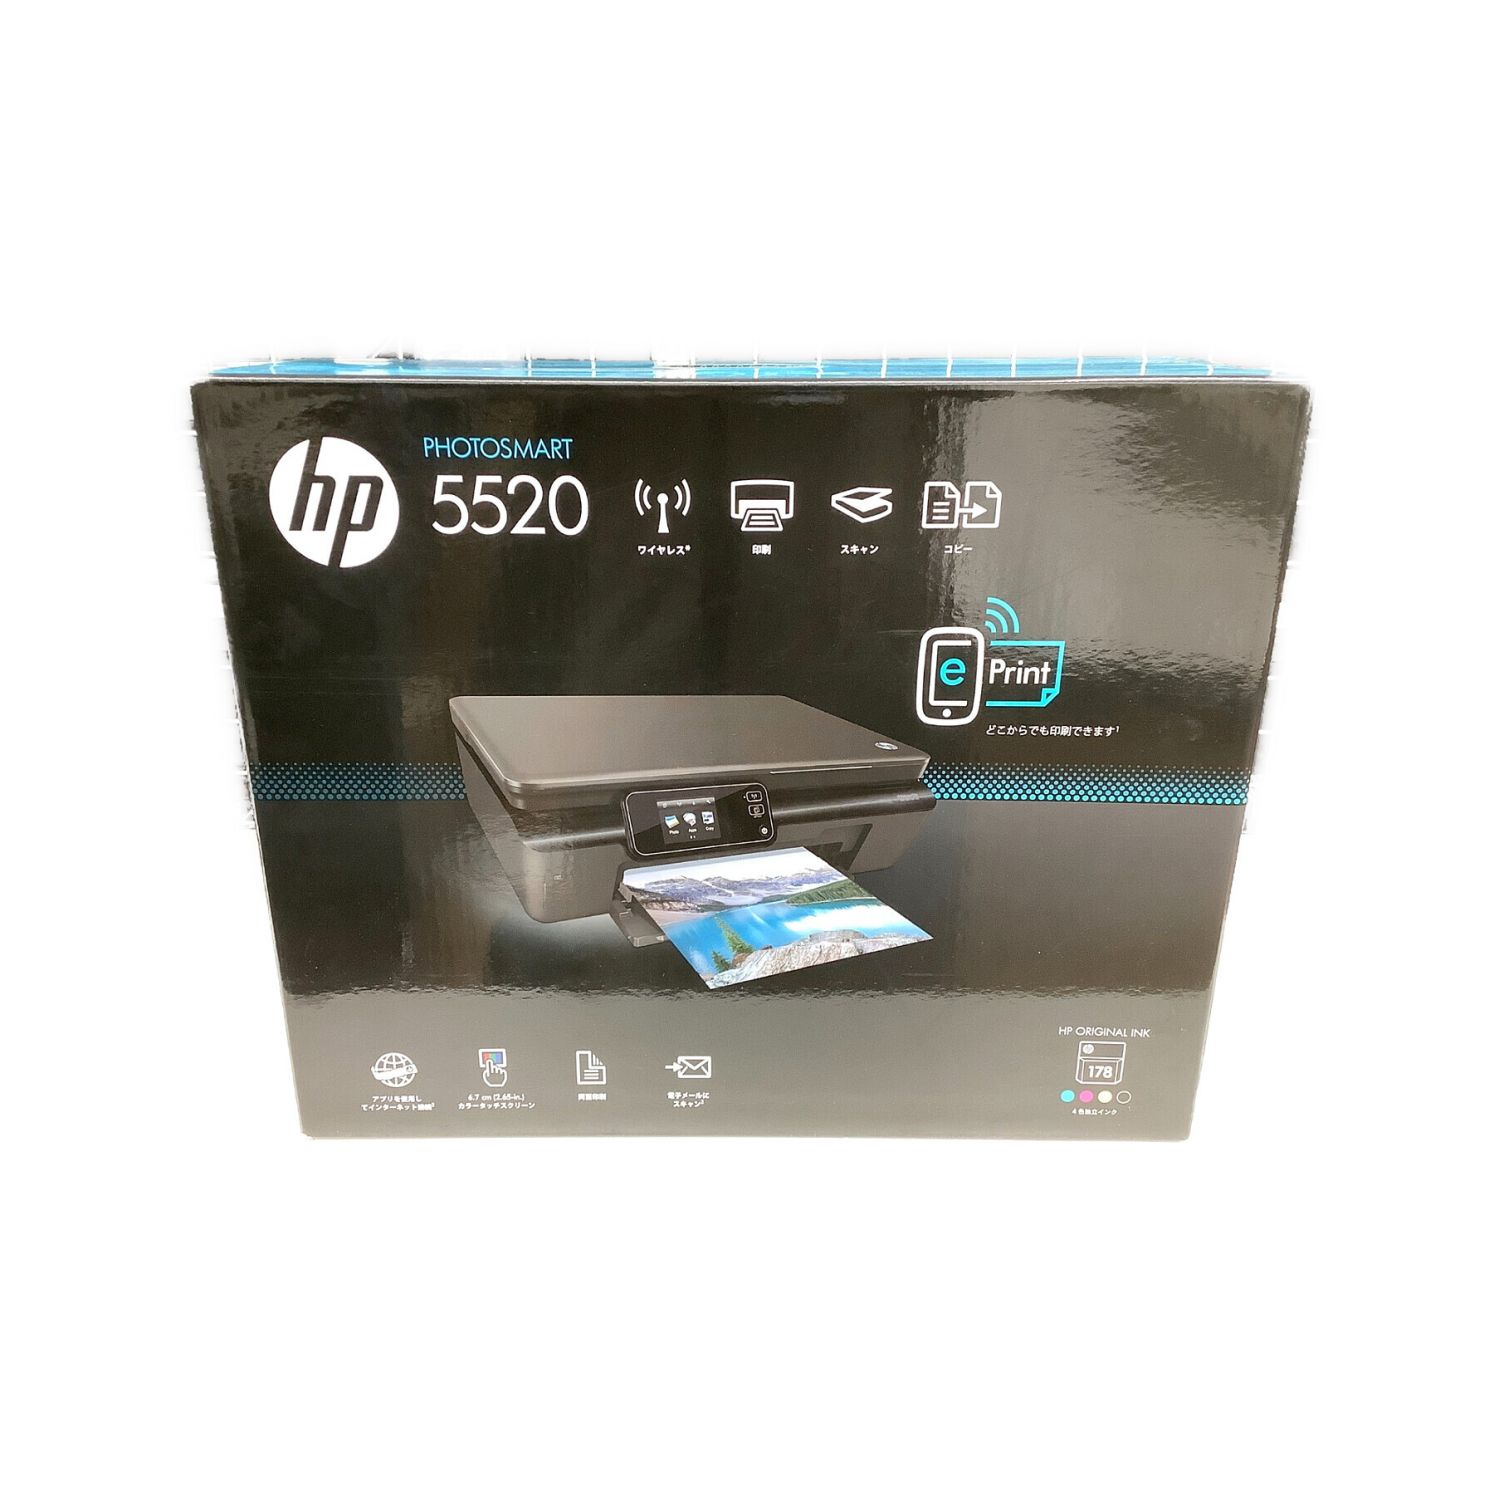 【即購入OK】 HPプリンター Photosmart 5520